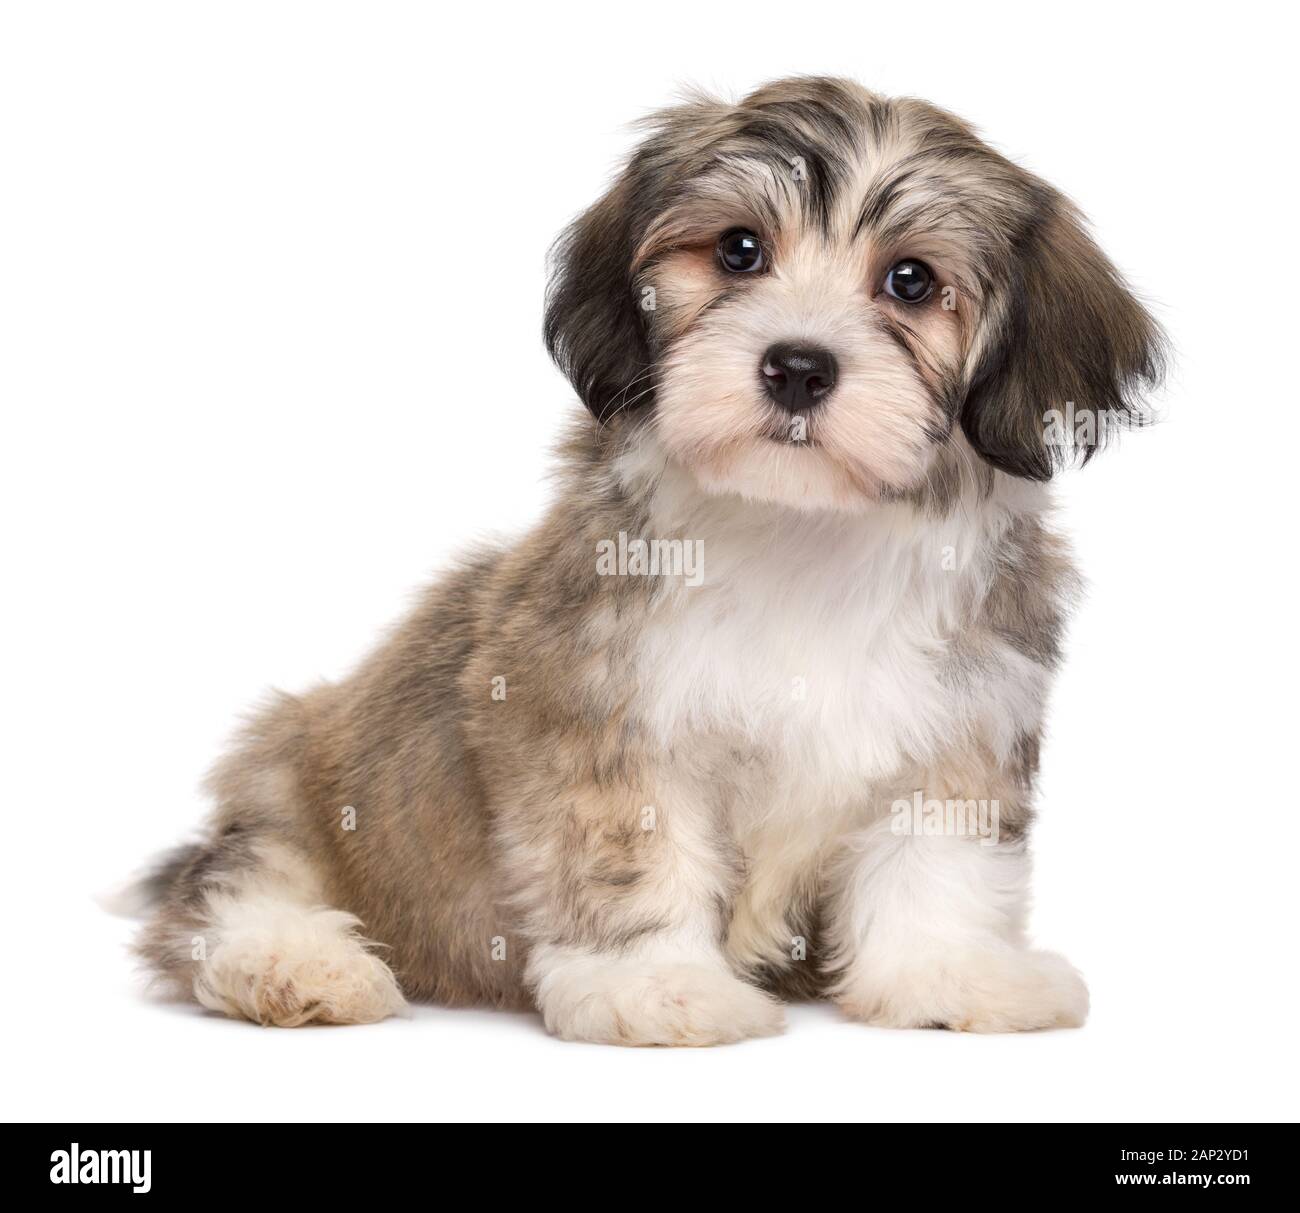 Carino piccolo salotto havanese cucciolo di cane - isolato su sfondo bianco Foto Stock